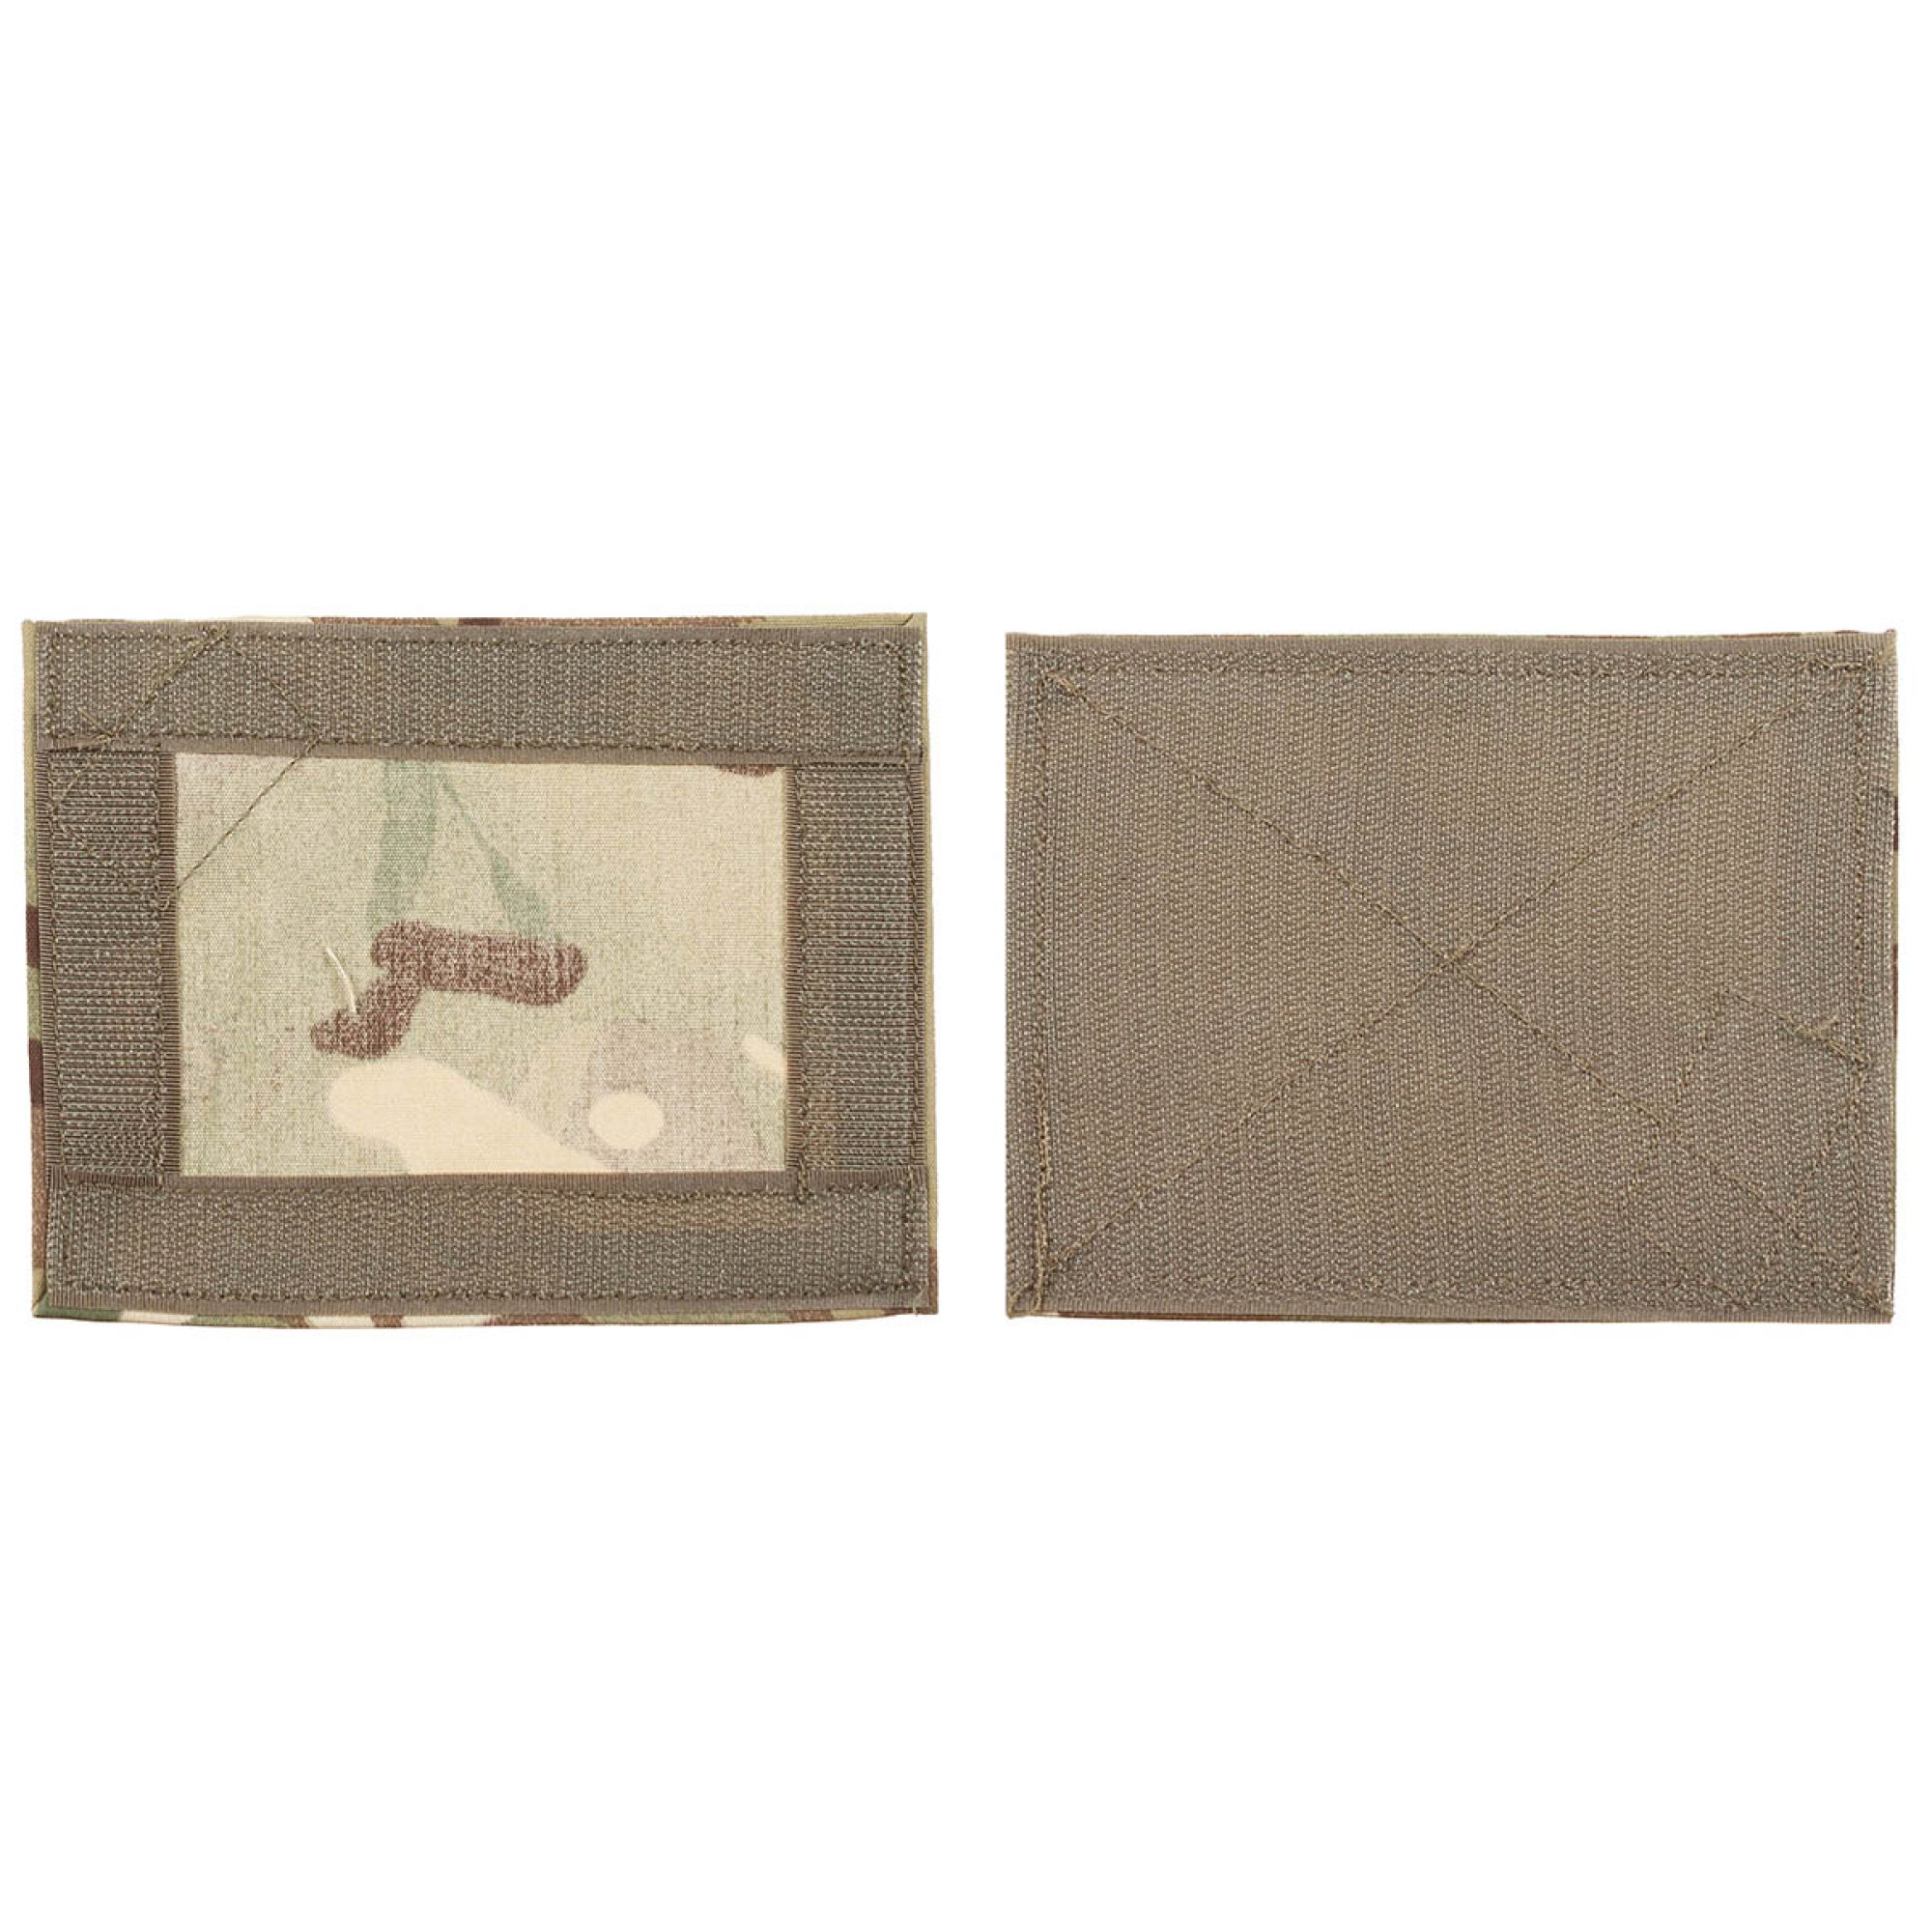 Brit. Klettabdeckung,  MTP, mit Fahne,  13 x 10 cm,  neuw. (20 Stück)